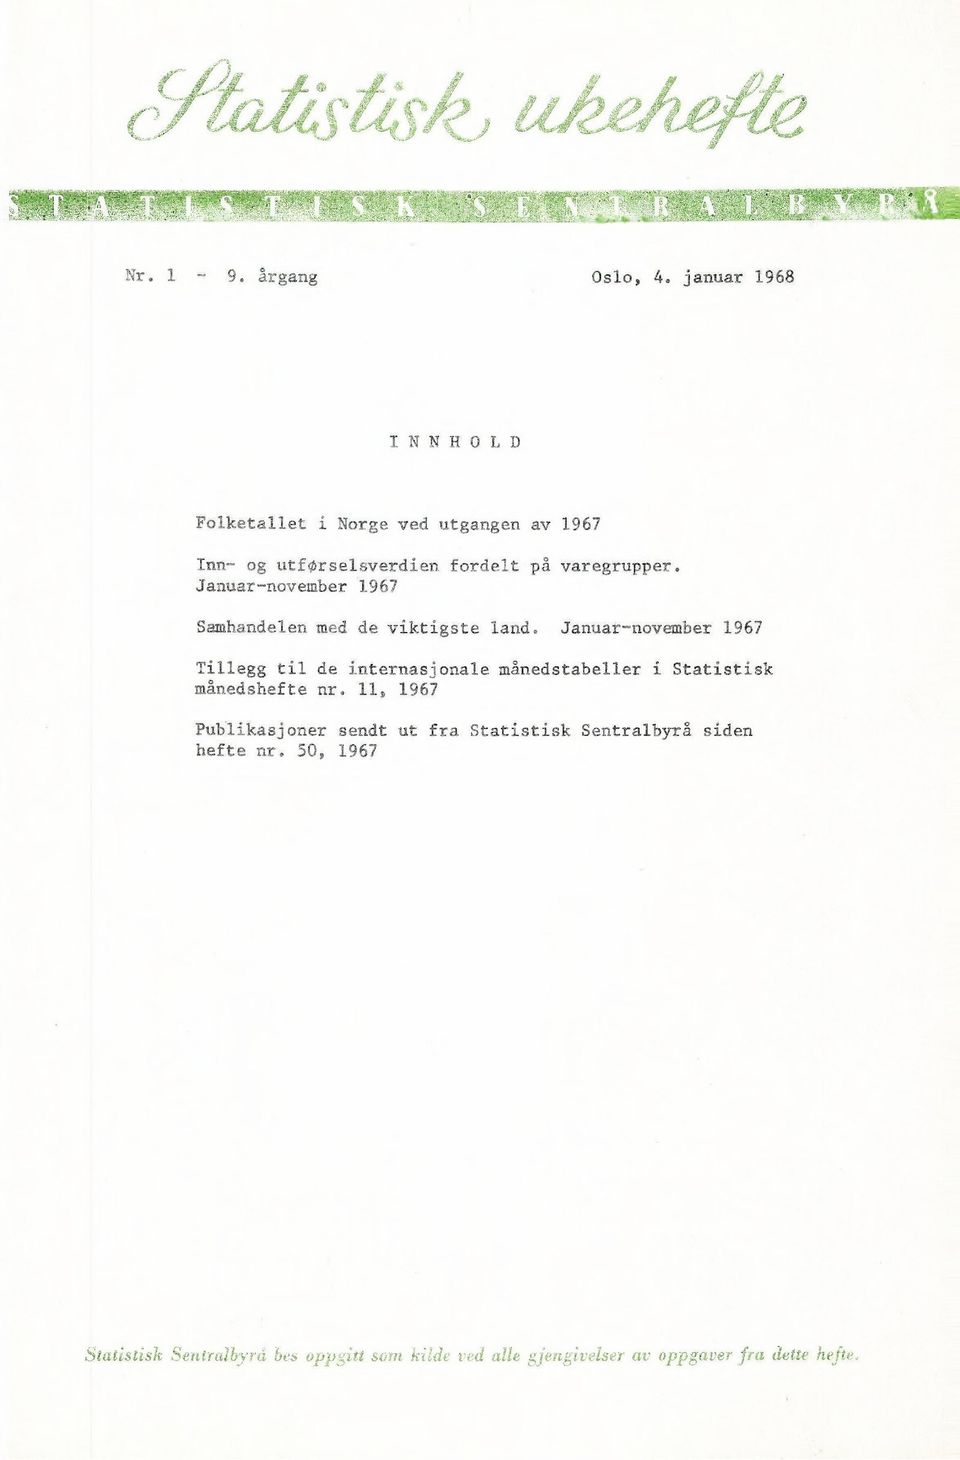 Januarnovember 1967 S.flhandelen med de viktigste land. Januar-novv.